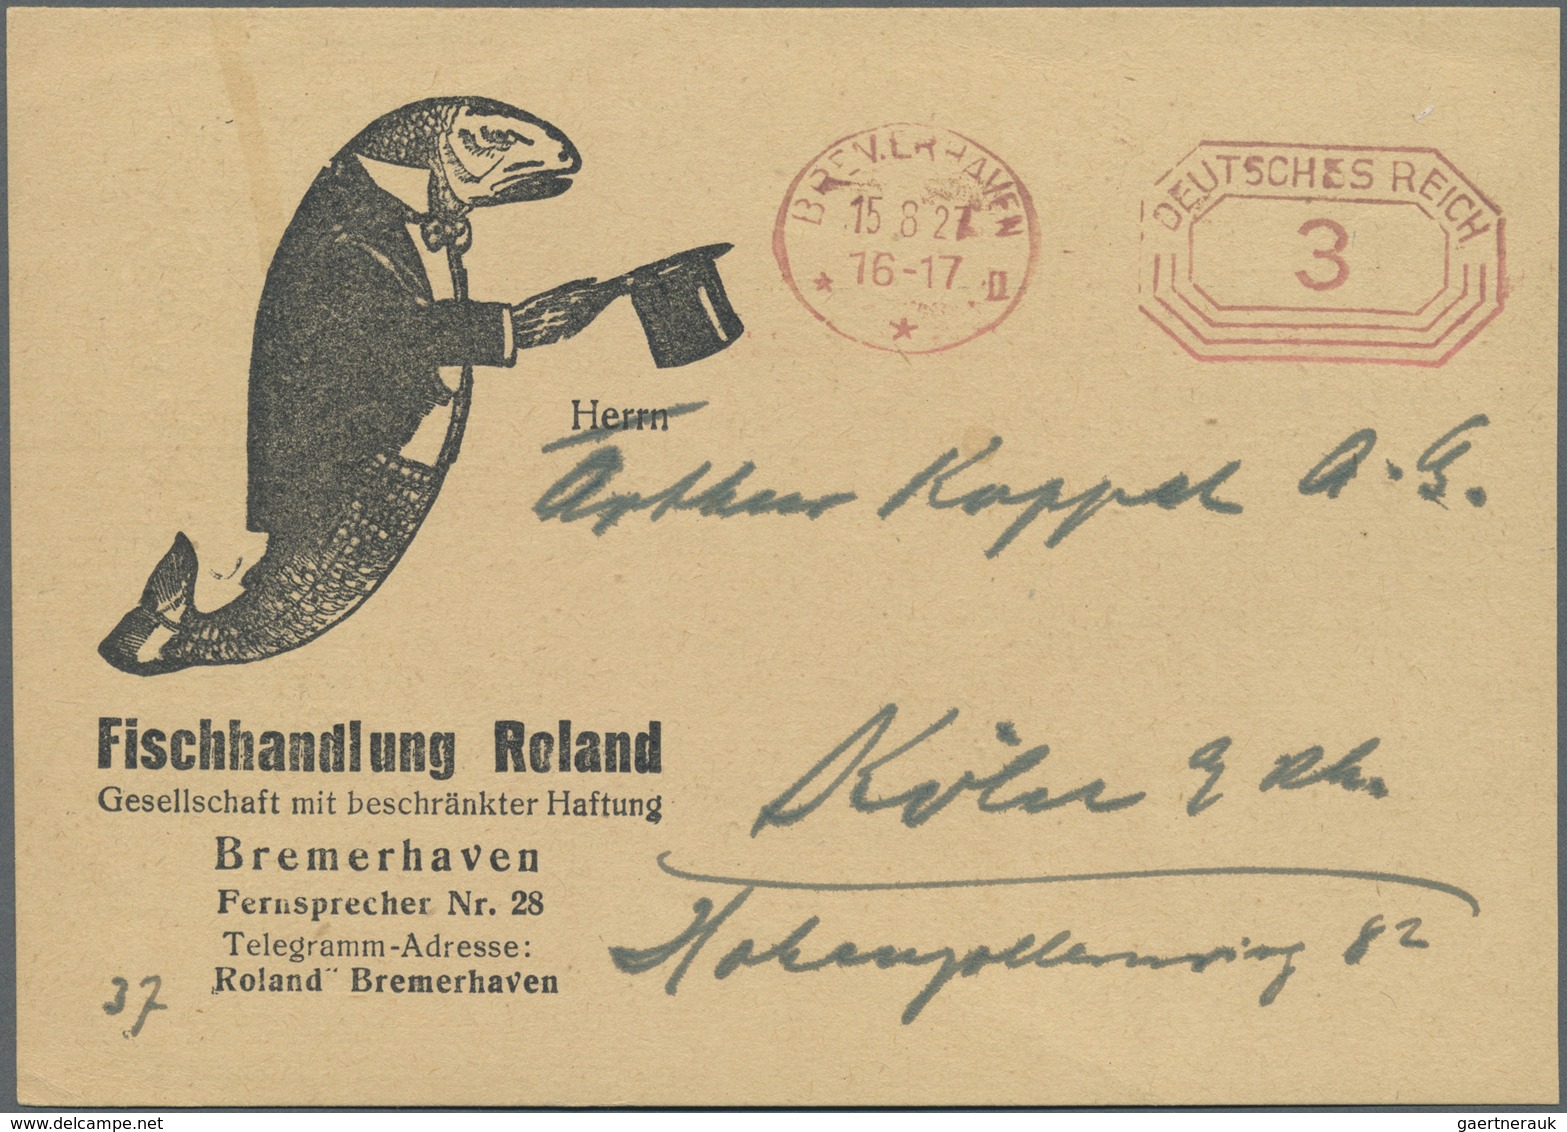 Ansichtskarten: Motive / Thematics: NAHRUNG/FISCHE: 4 Karten ca. 1925/1930, "Geräucherte Sprotten No